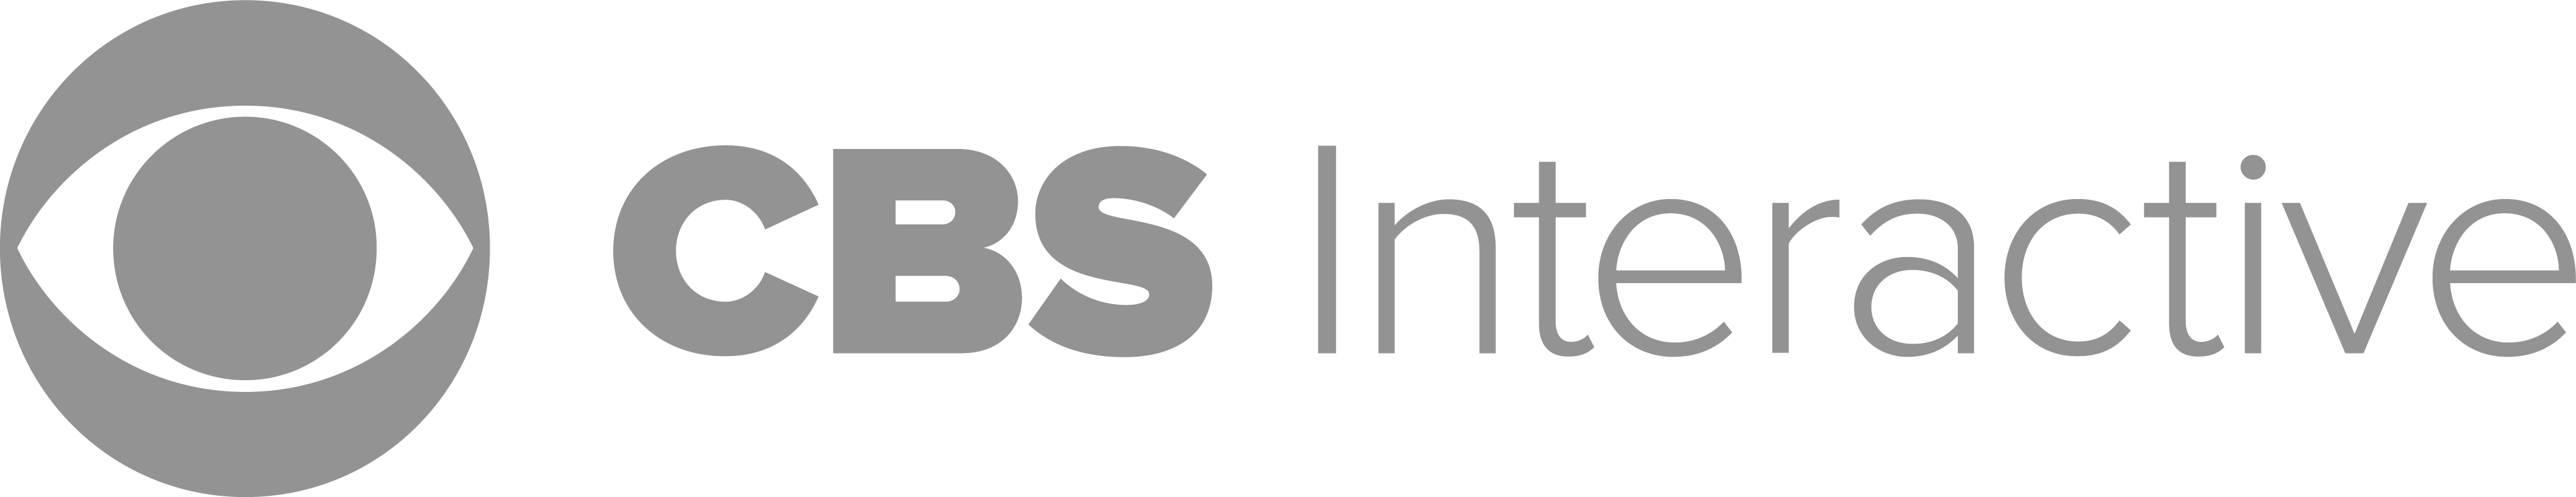 CBS_Interactive_Logo-1